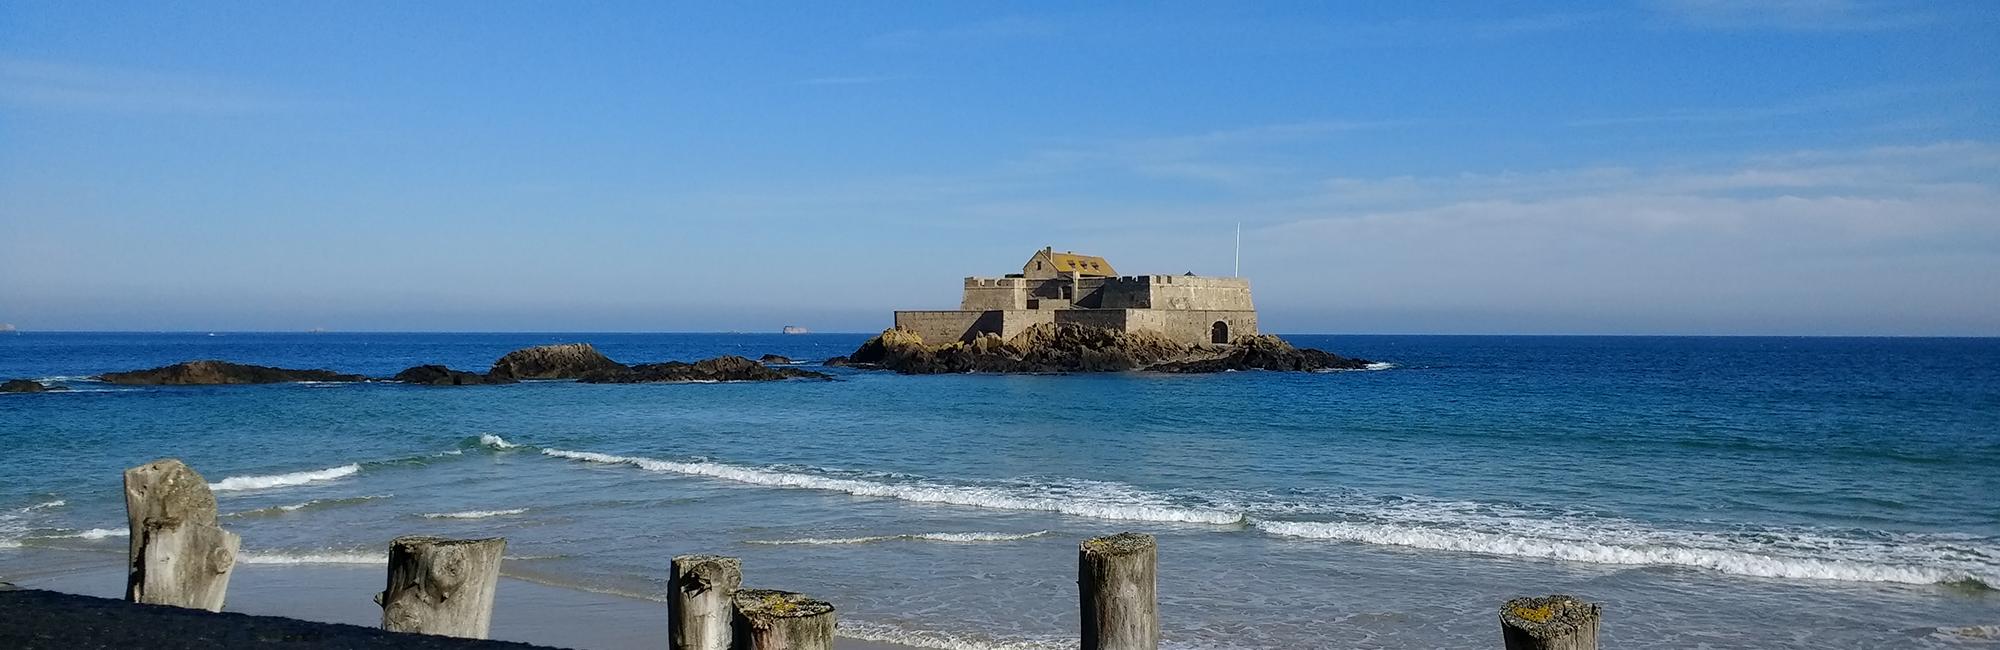 Fort national sur la plage de Saint-Malo